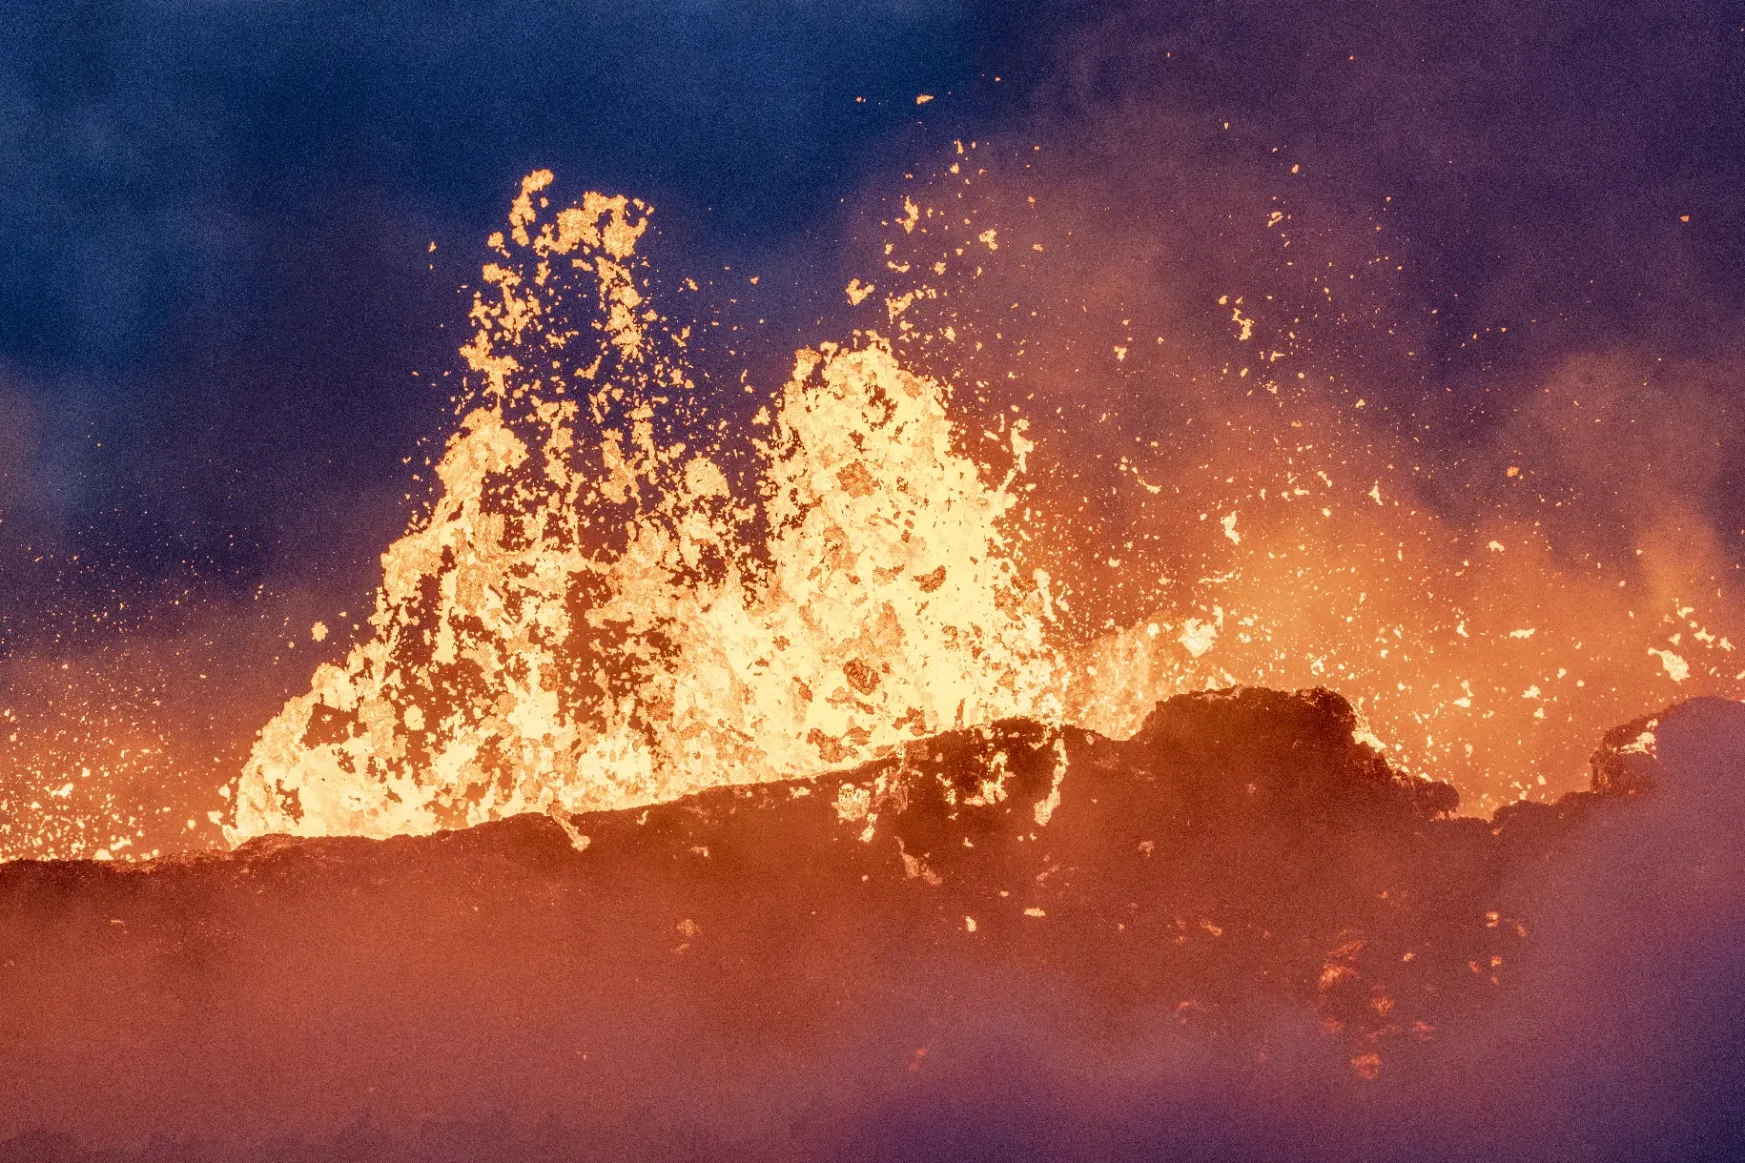 Izlandi vulkánkitörés: minden napra egymillió köbméter friss láva